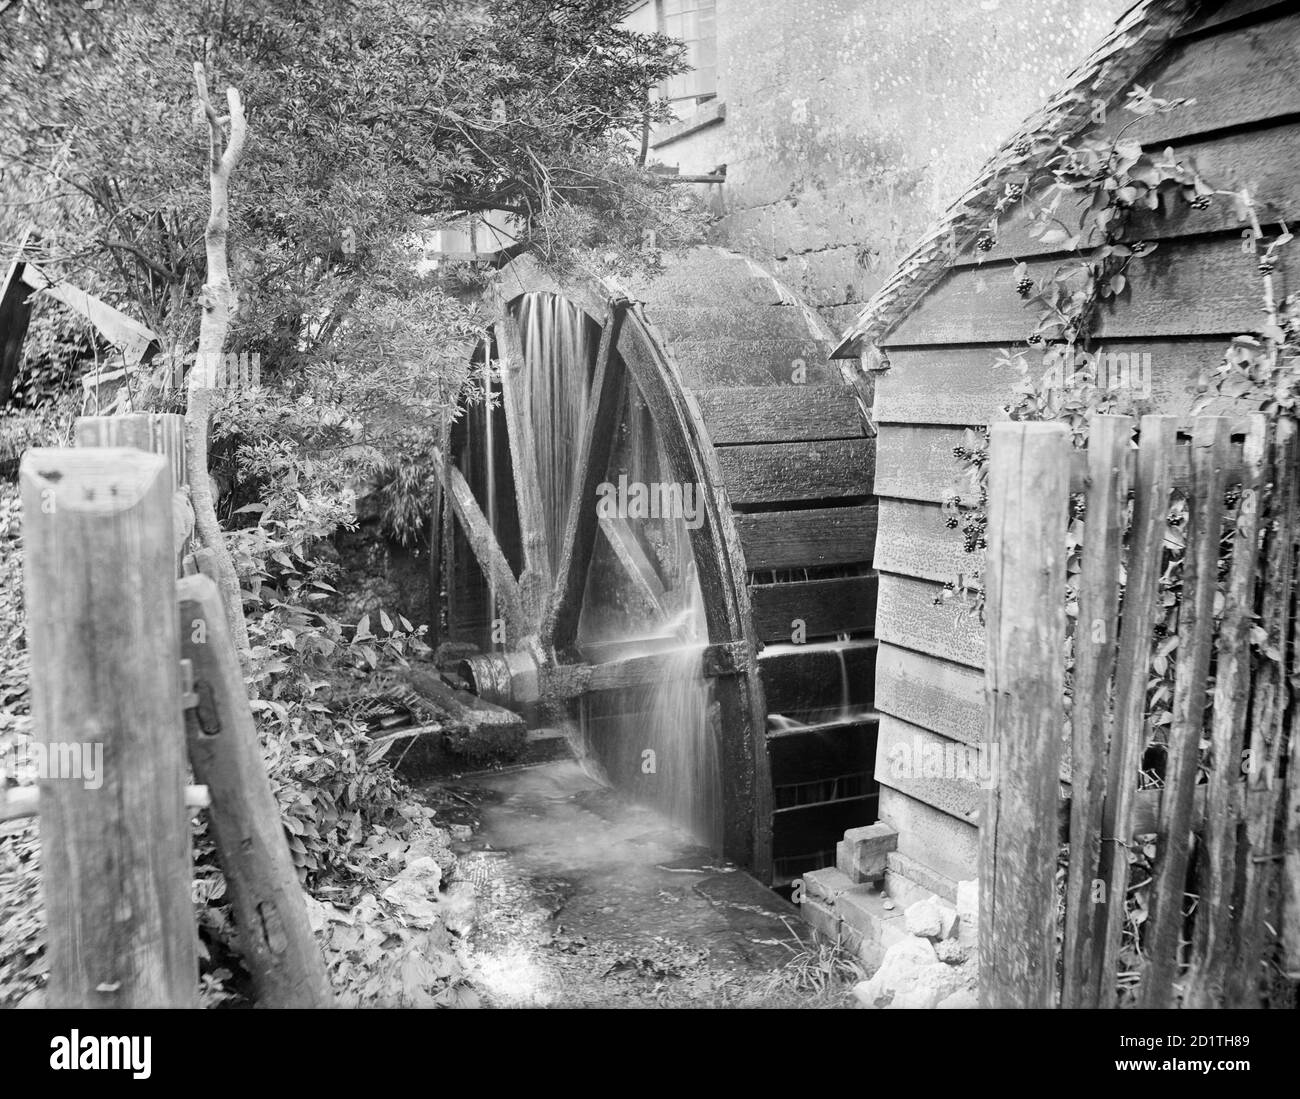 ALTE MÜHLE, Chipping Campden, Gloucestershire. Außenansicht des Wasserrads bei der Arbeit. In Chipping Campden gibt es vier Wassermühlen auf den im Domesday Book erwähnten mittelalterlichen Mühlen. Fotografiert 1900 von Henry Taunt. Stockfoto